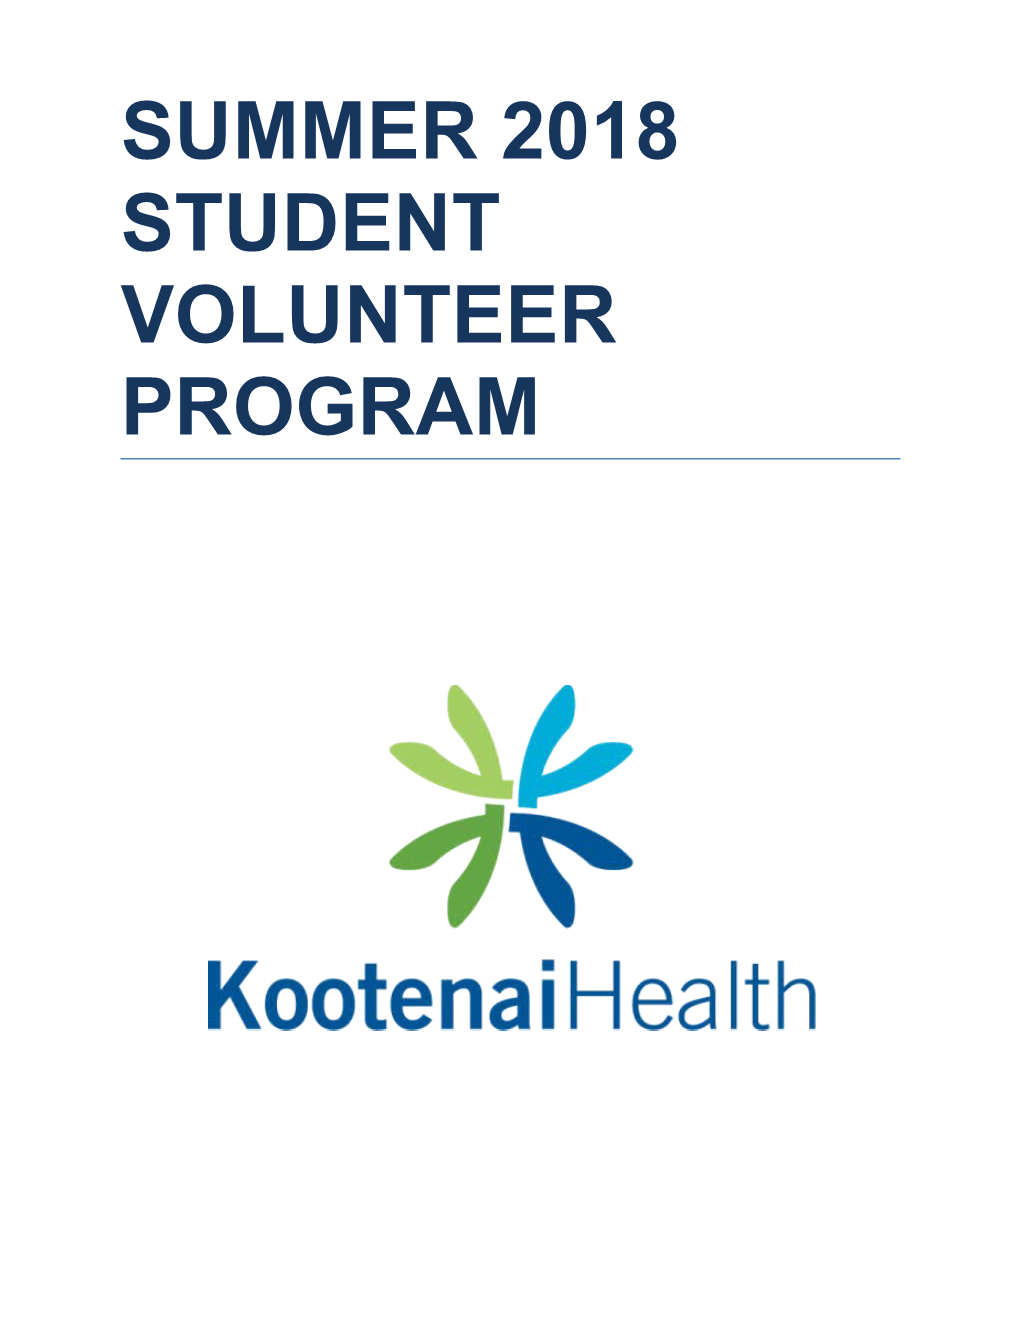 Summer 2018 Student Volunteer Program